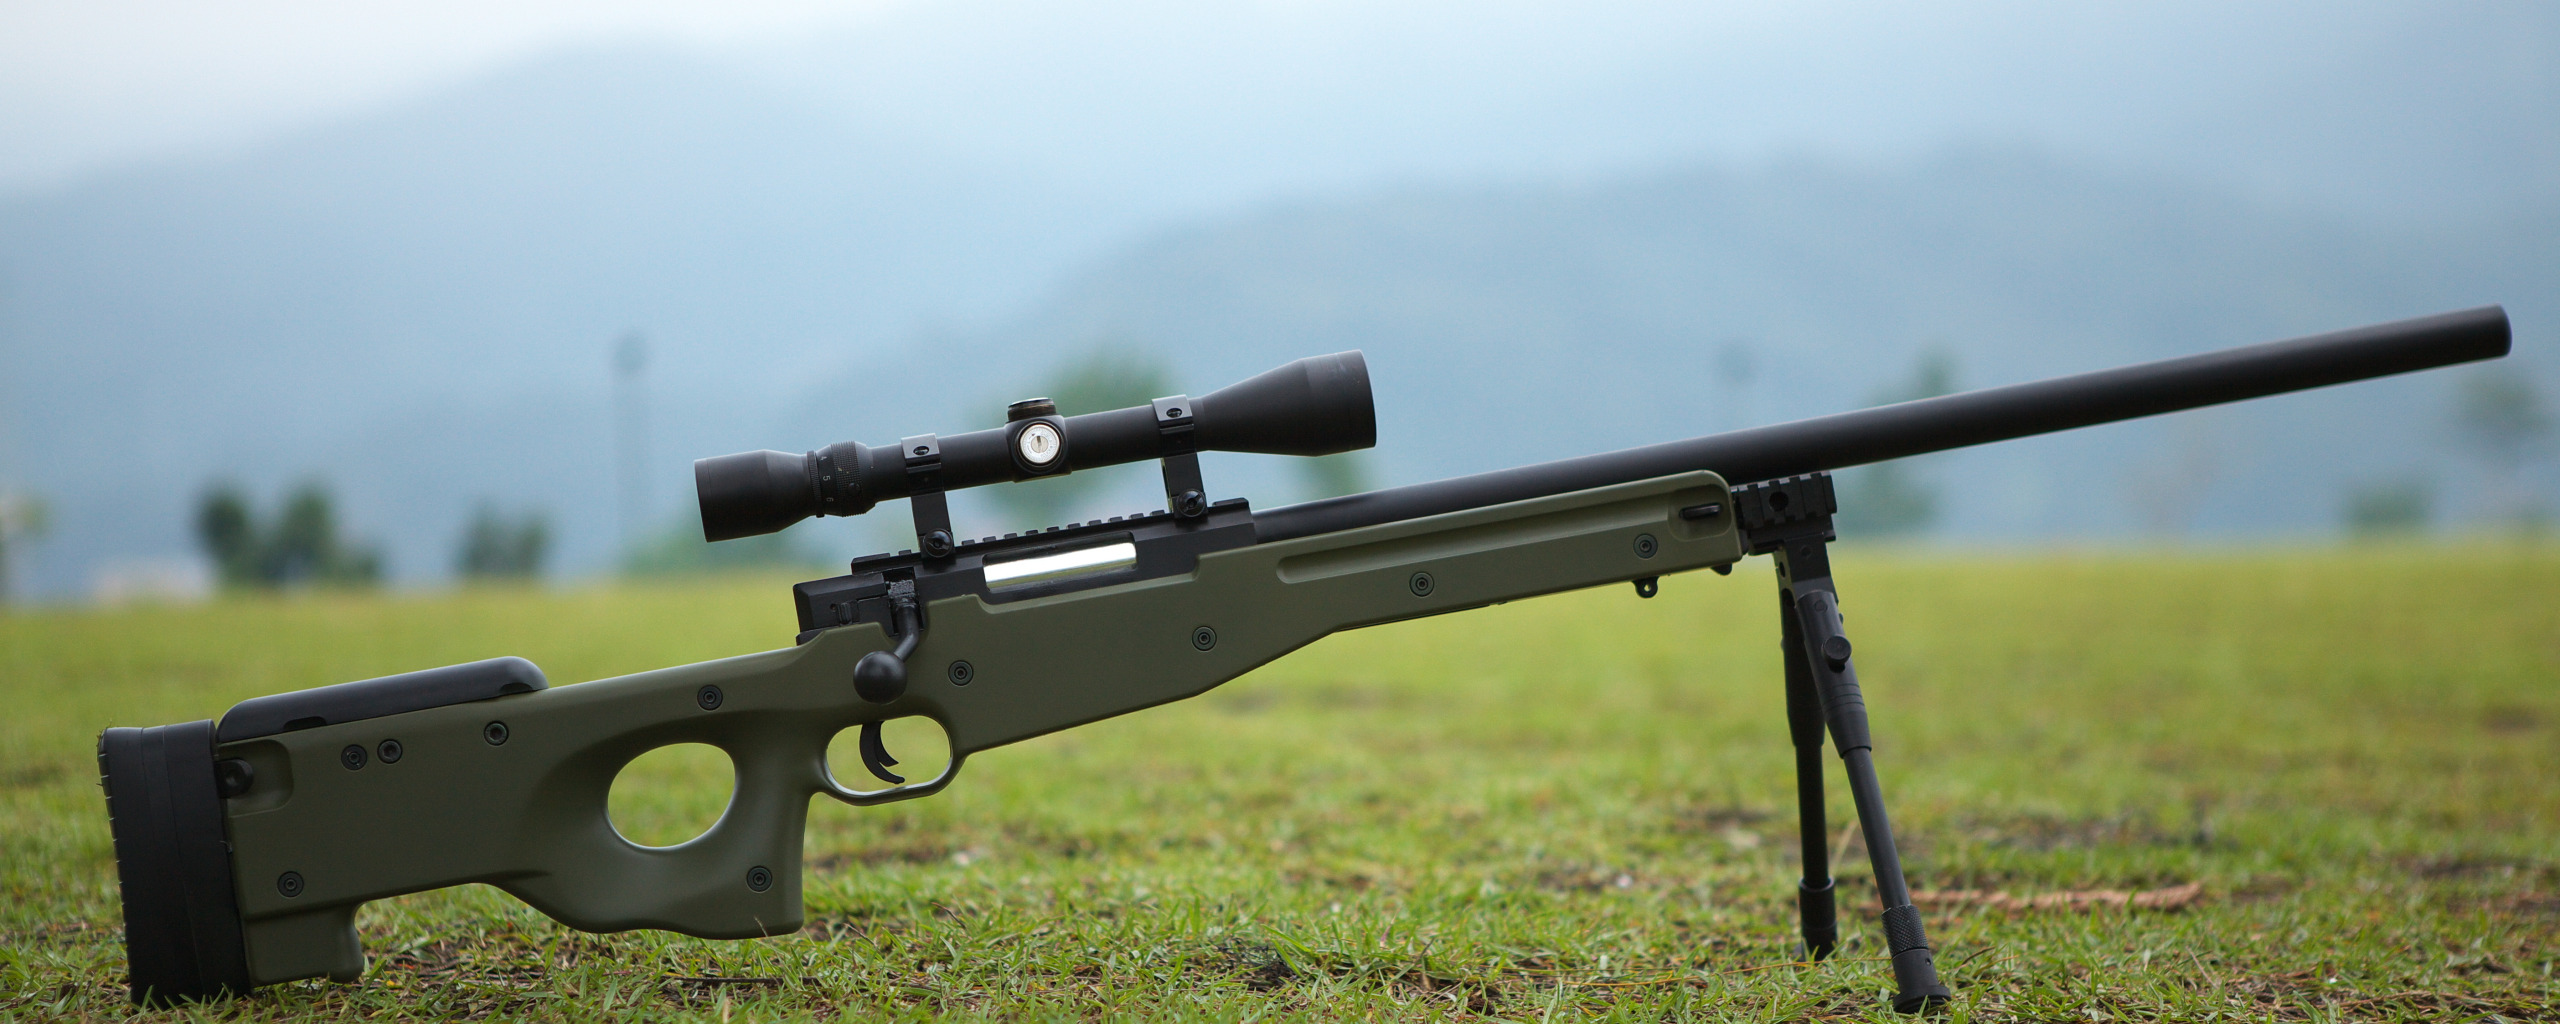 британская снайперская винтовка awp (120) фото